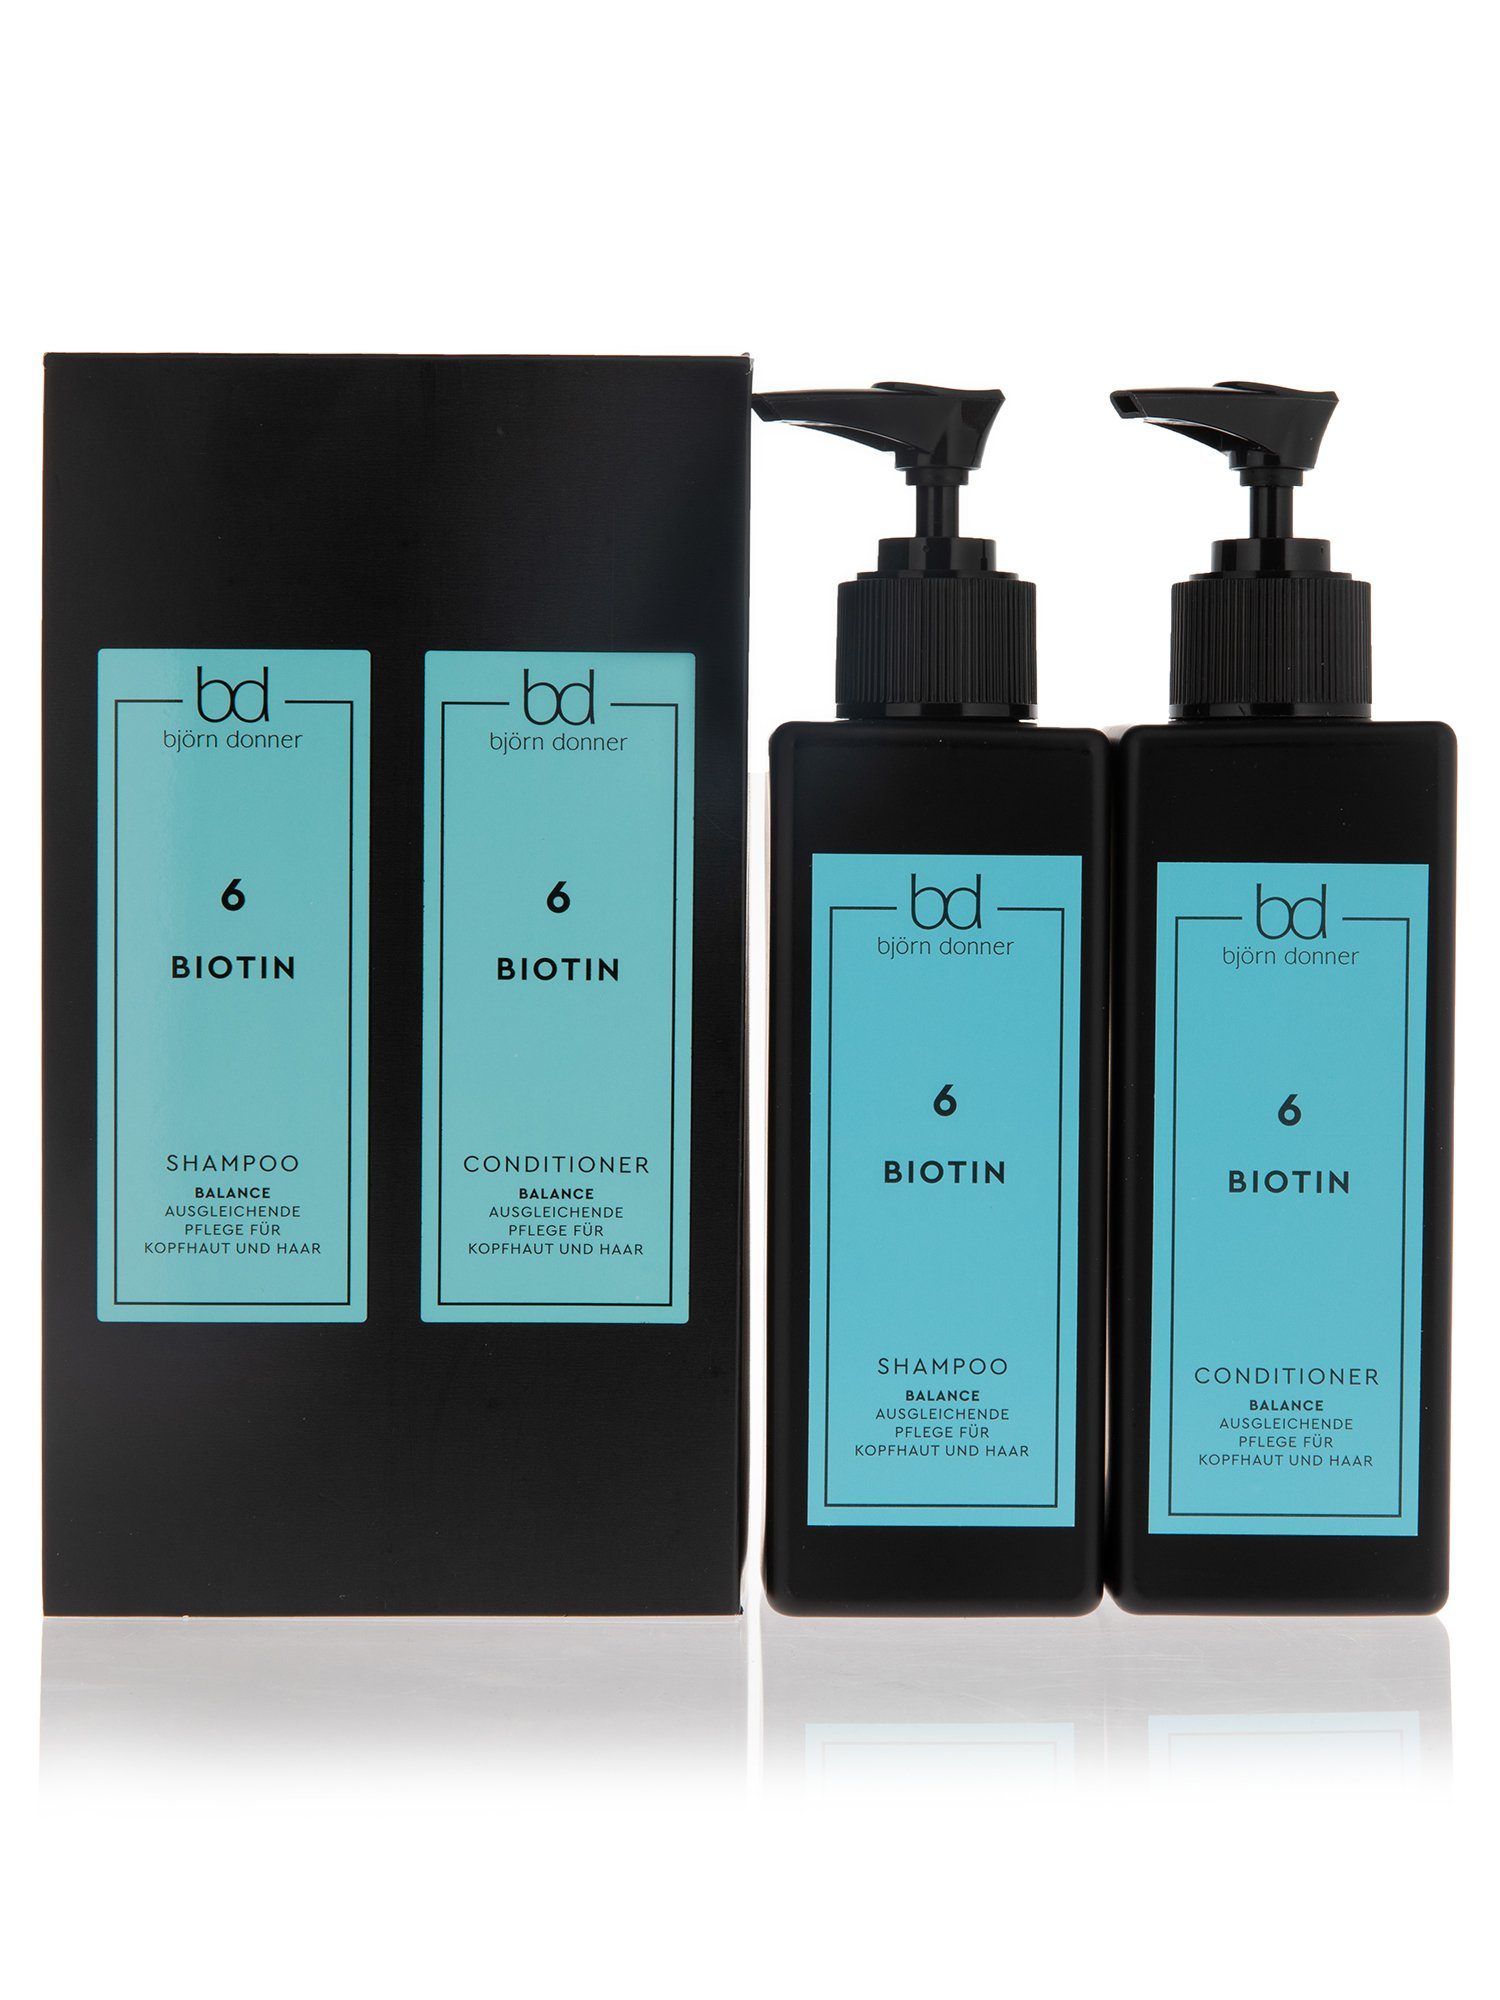 Björn Donner Haarpflege-Set "Balance Shampoo & Conditioner", 2er Set, mit dem Schönheitsvitamin Biotin, für kräftiges & gesundes Haar | Haarpflege-Sets